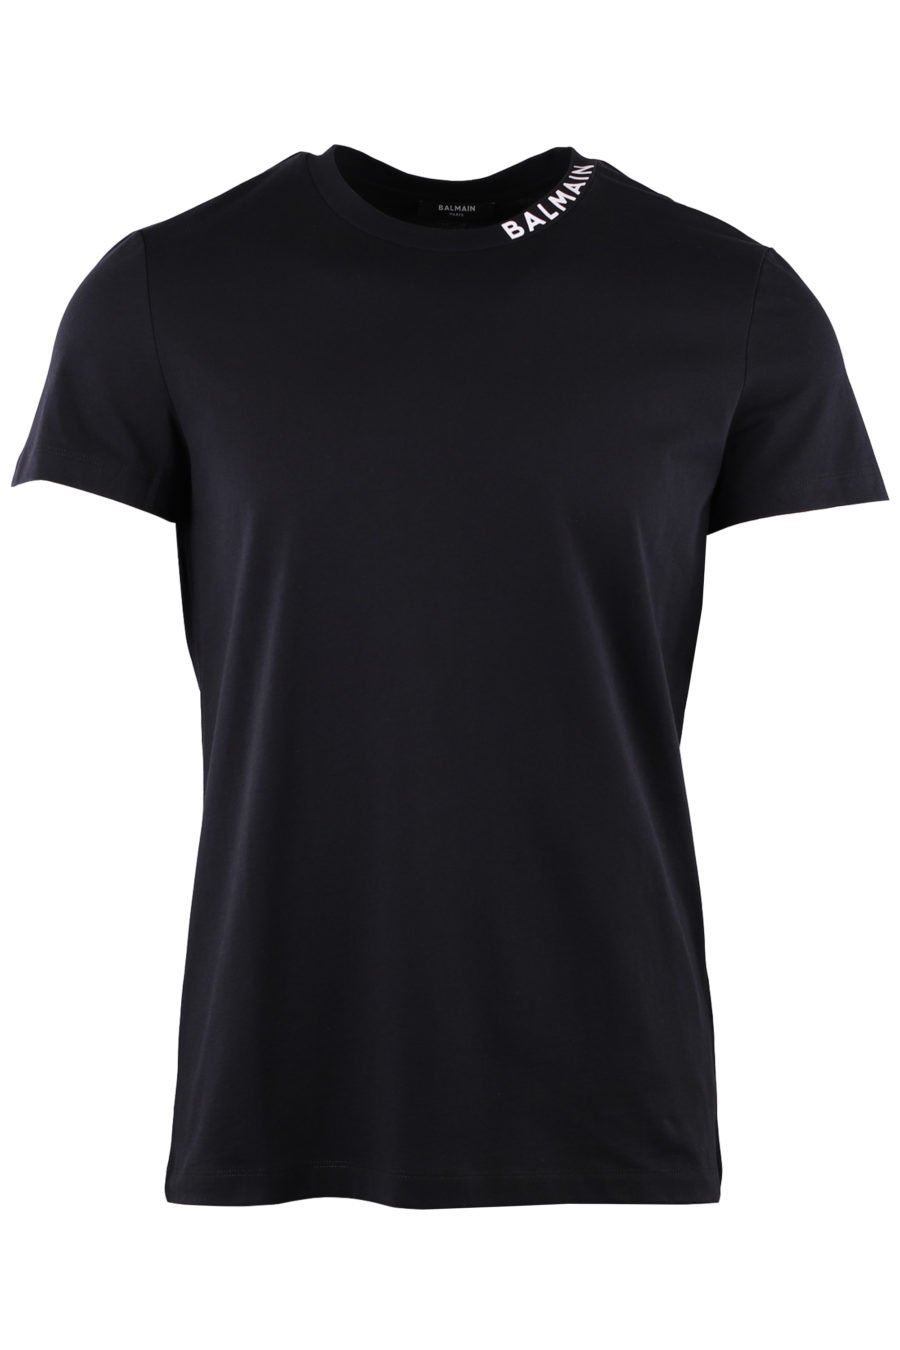 Camiseta negra con logo blanco en el cuello - IMG 9048 1